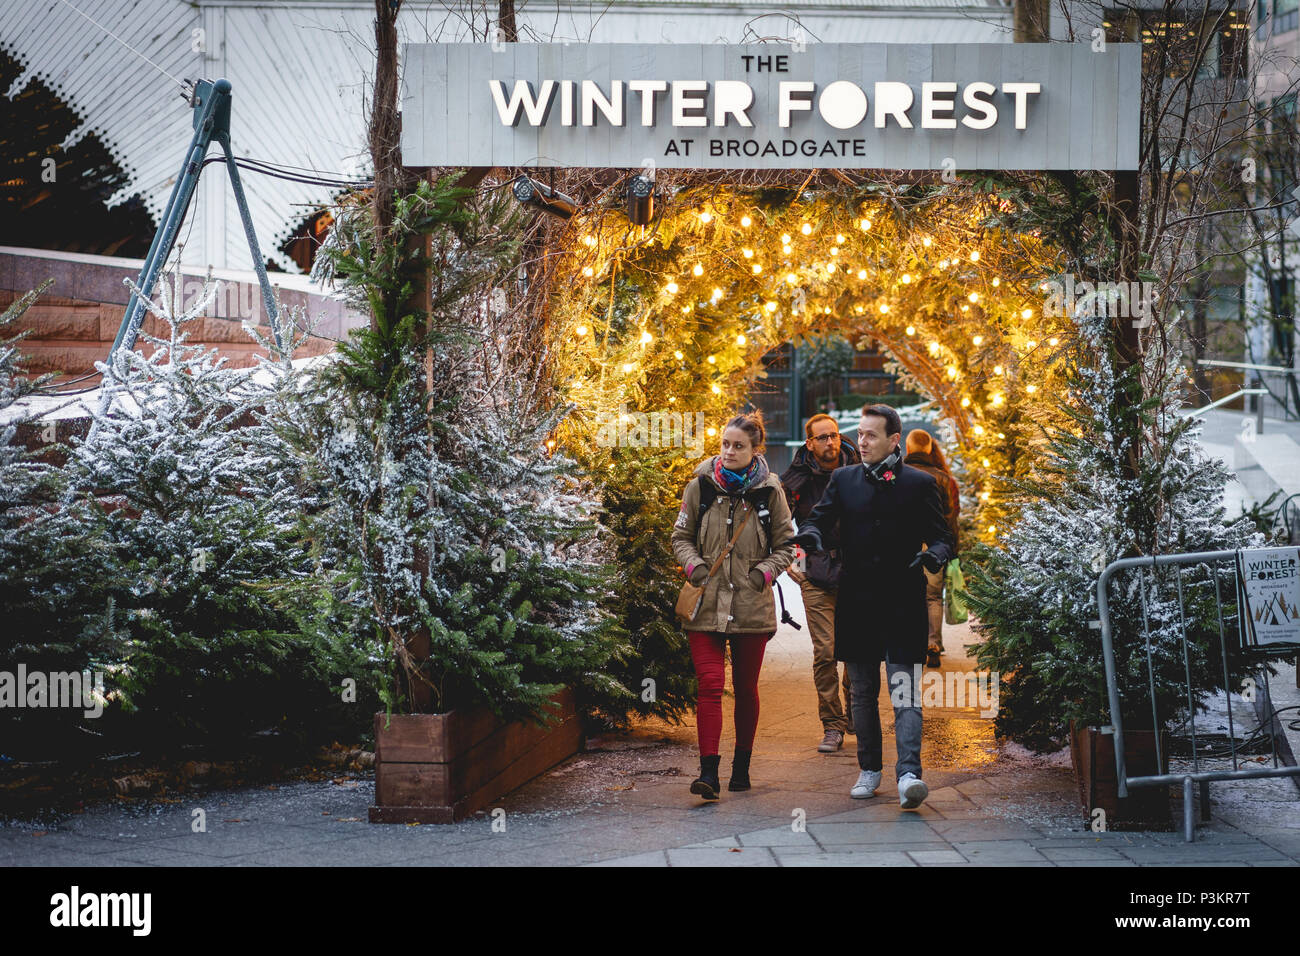 London, UK, November 2017. Menschen in Exchange Square im Broadgate, wo Ein nordisch-inspirierten Wald namens Winter Forest an Weihnachten installiert ist. Stockfoto